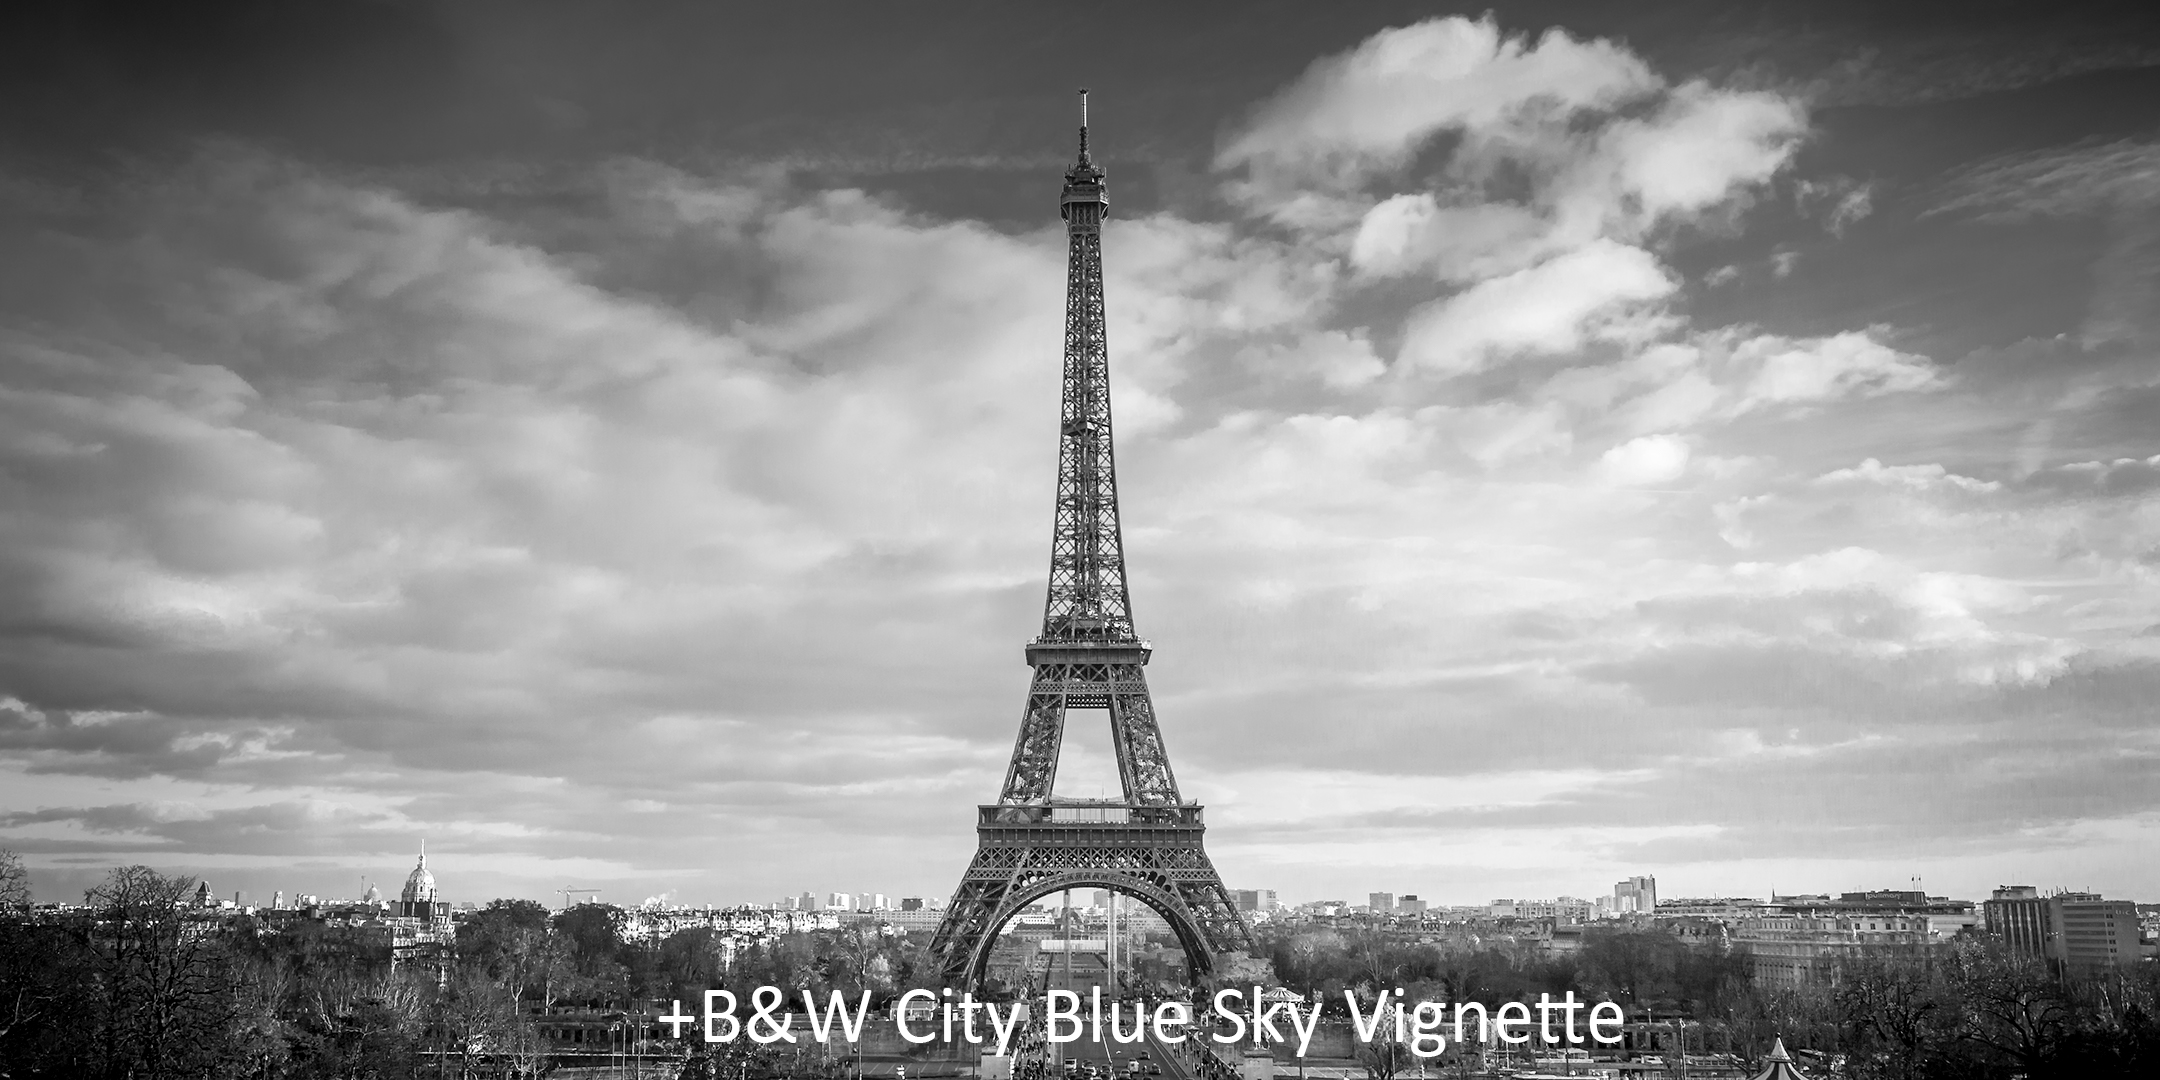 + B&W City Blue Sky Vingette.jpg